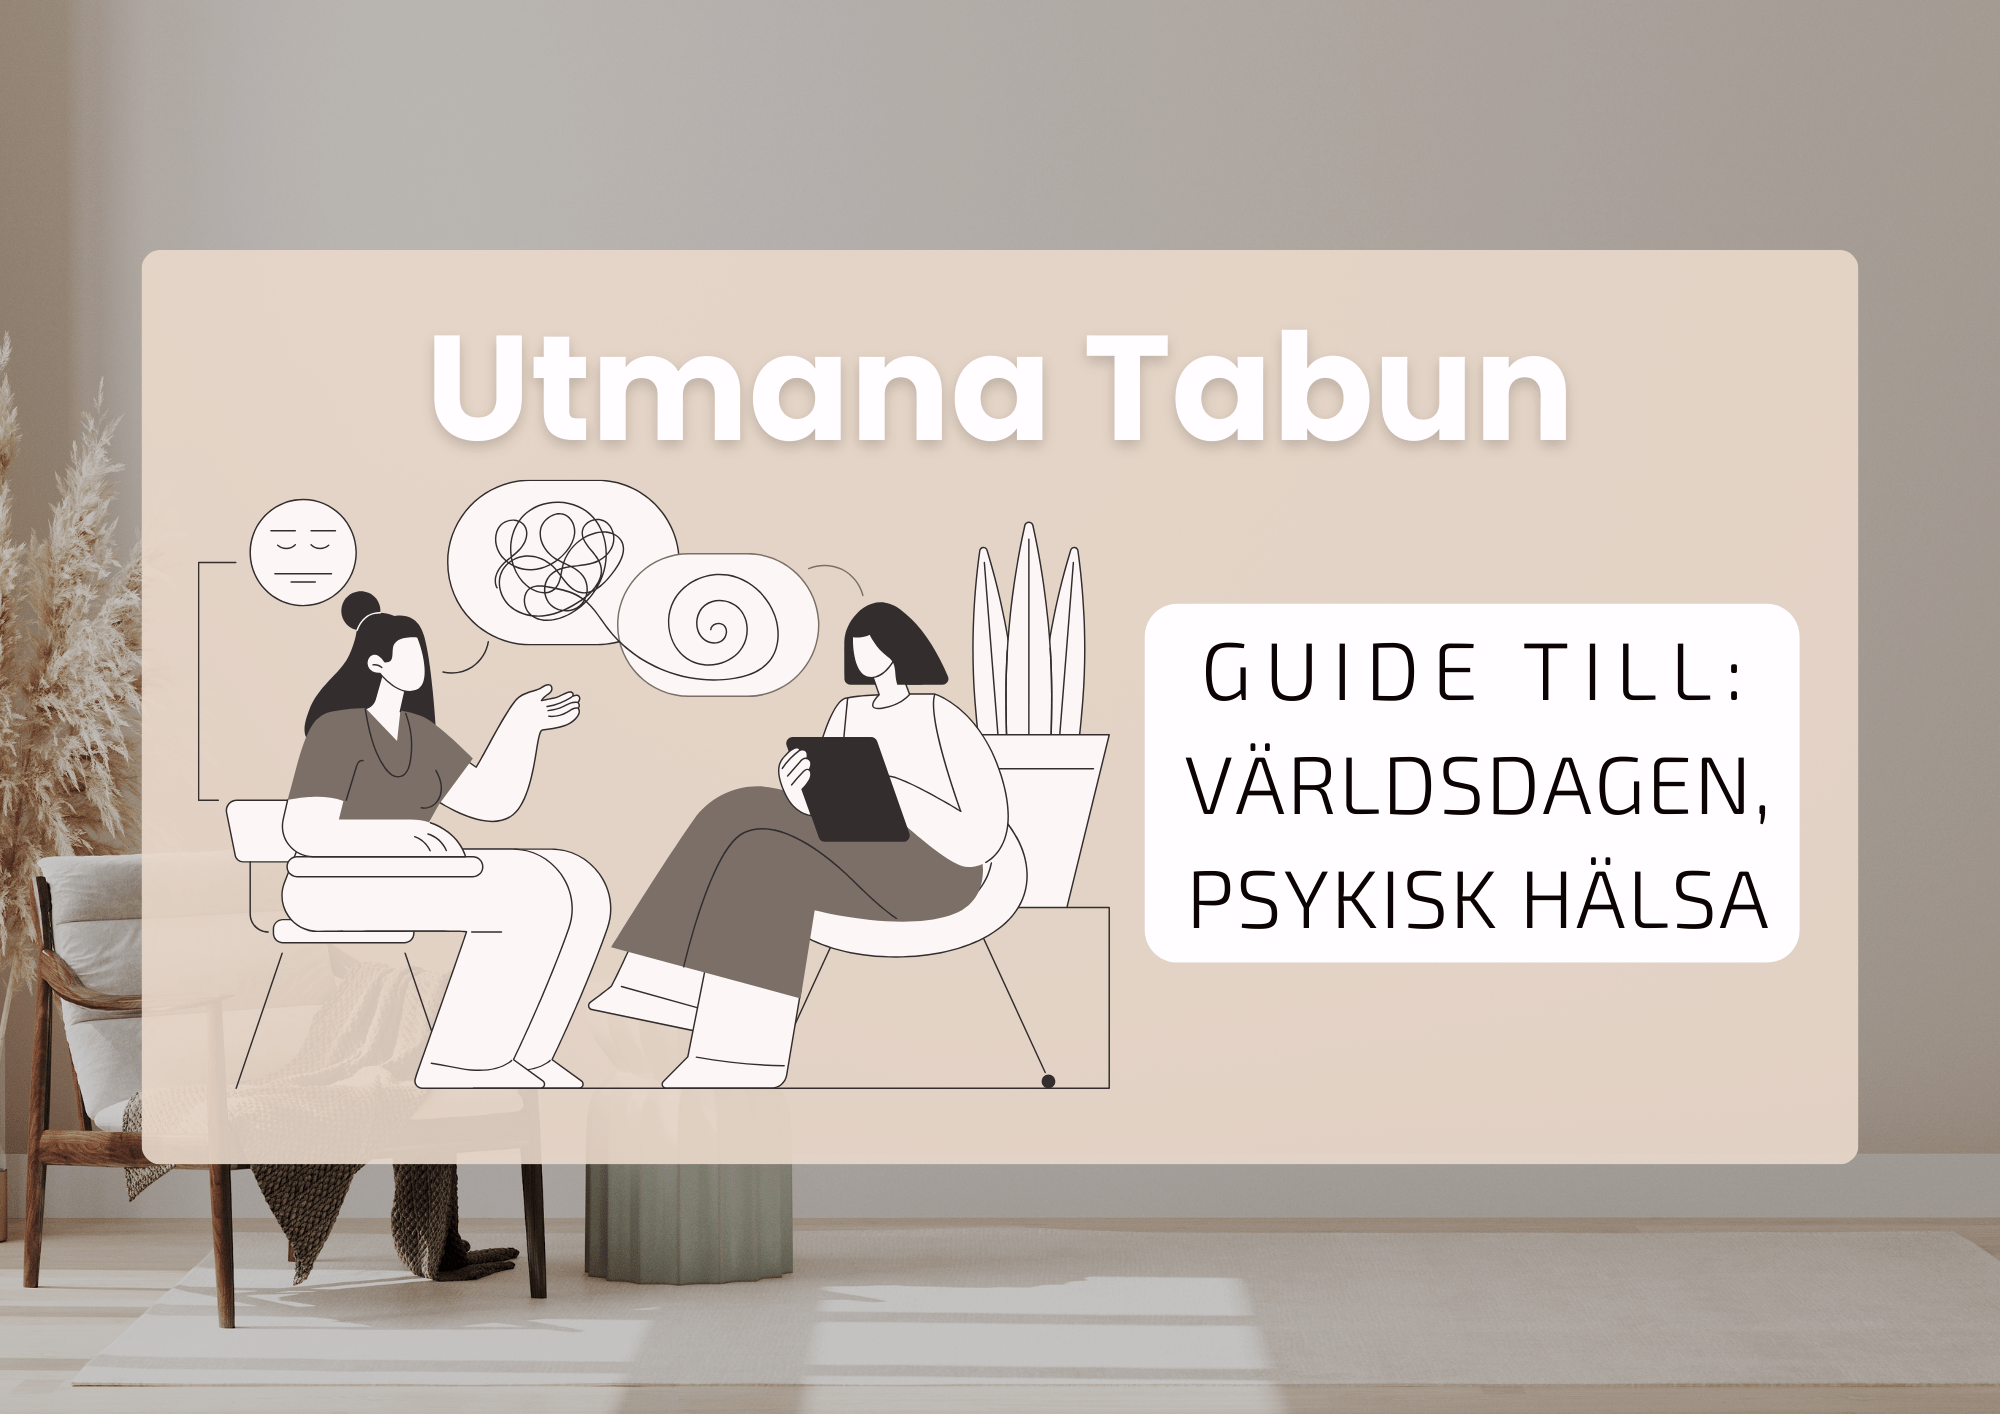 Utmana tabu. Guide till Världsdagen för psykisk hälsa. Illustration av en kvinna hos hennes terapeut.